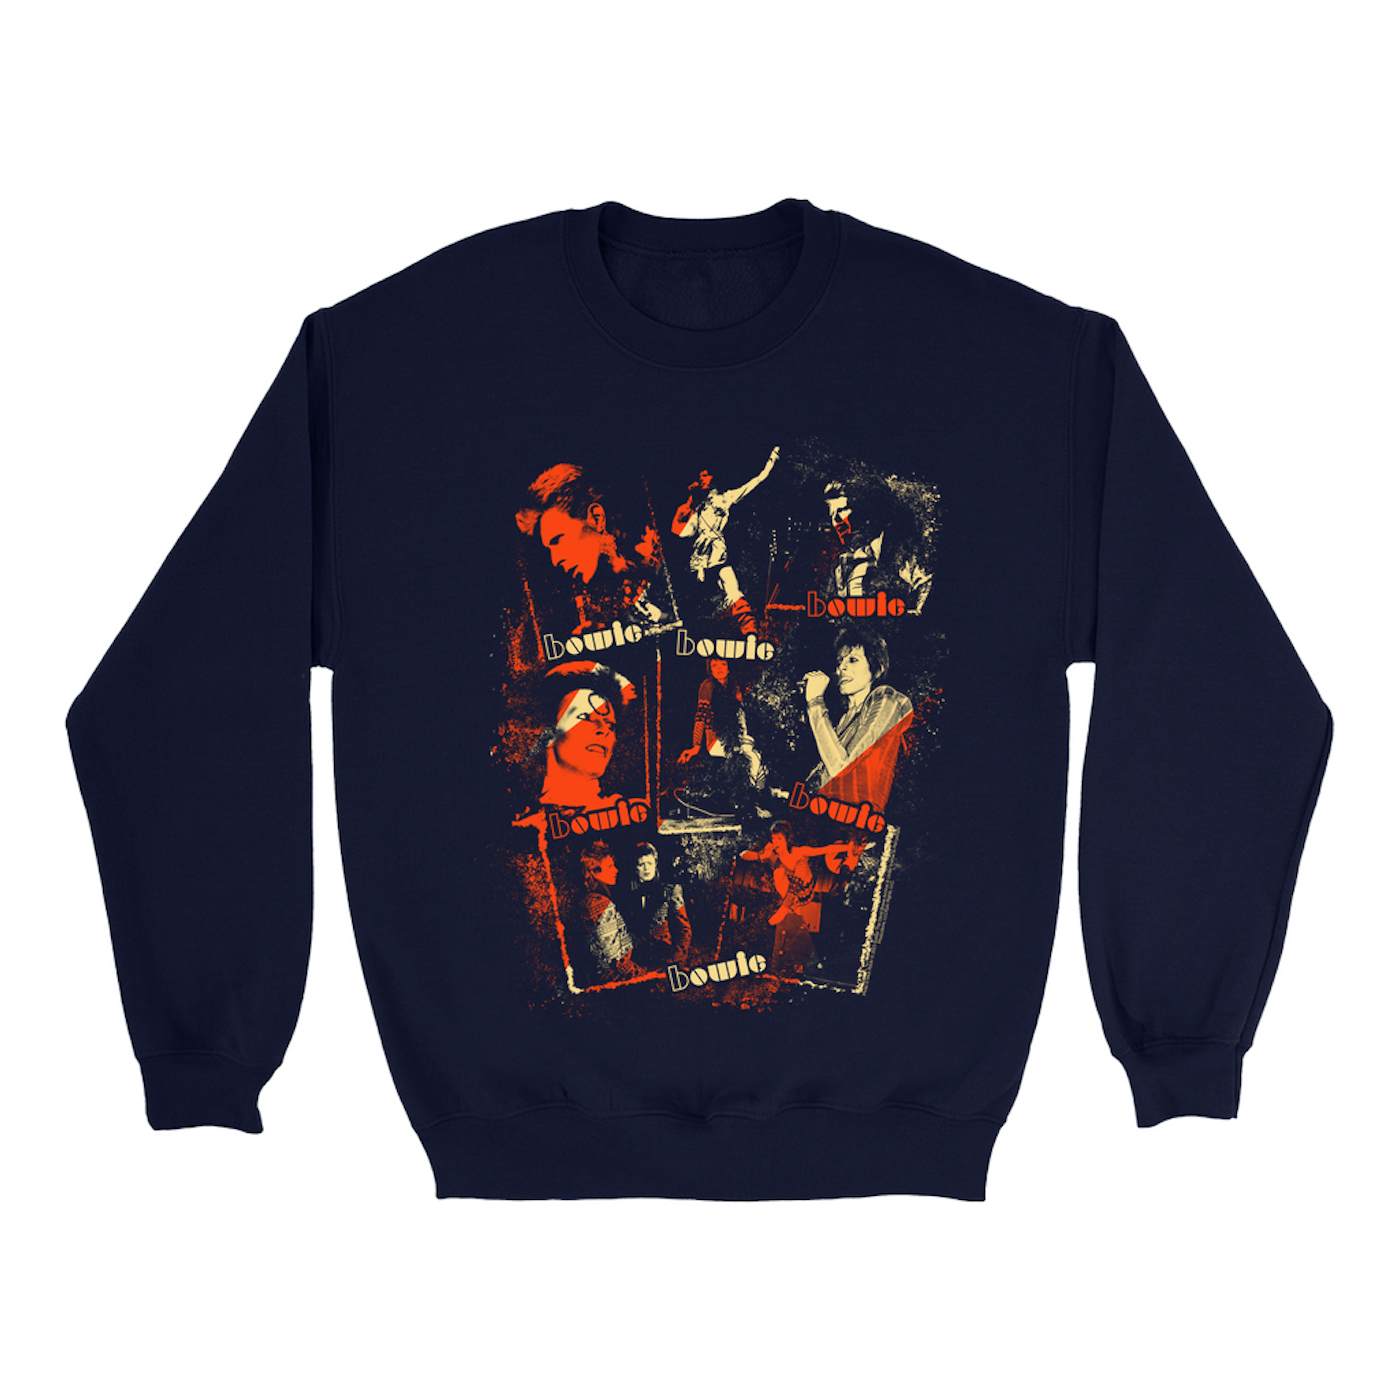 David Bowie Sweatshirt | Ziggy Stardust Photo Collage Distressed (Merchbar Exclusive) David Bowie Sweatshirt